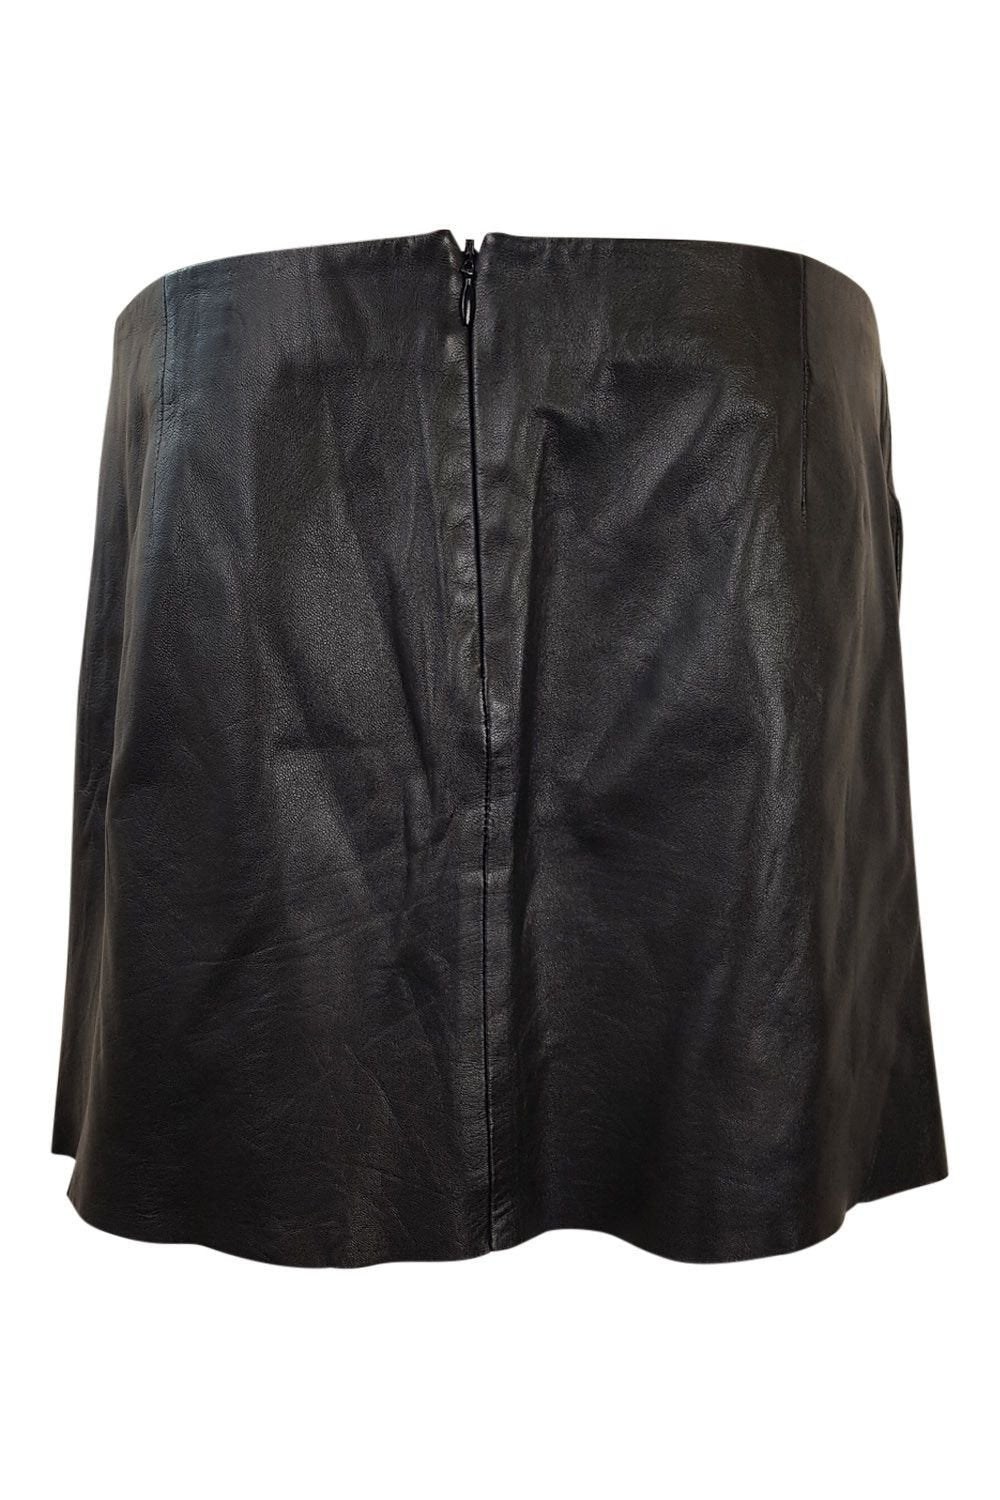 JOSEPH Black Leather Layered Micro Mini Skirt (UK 8)-Joseph-The Freperie